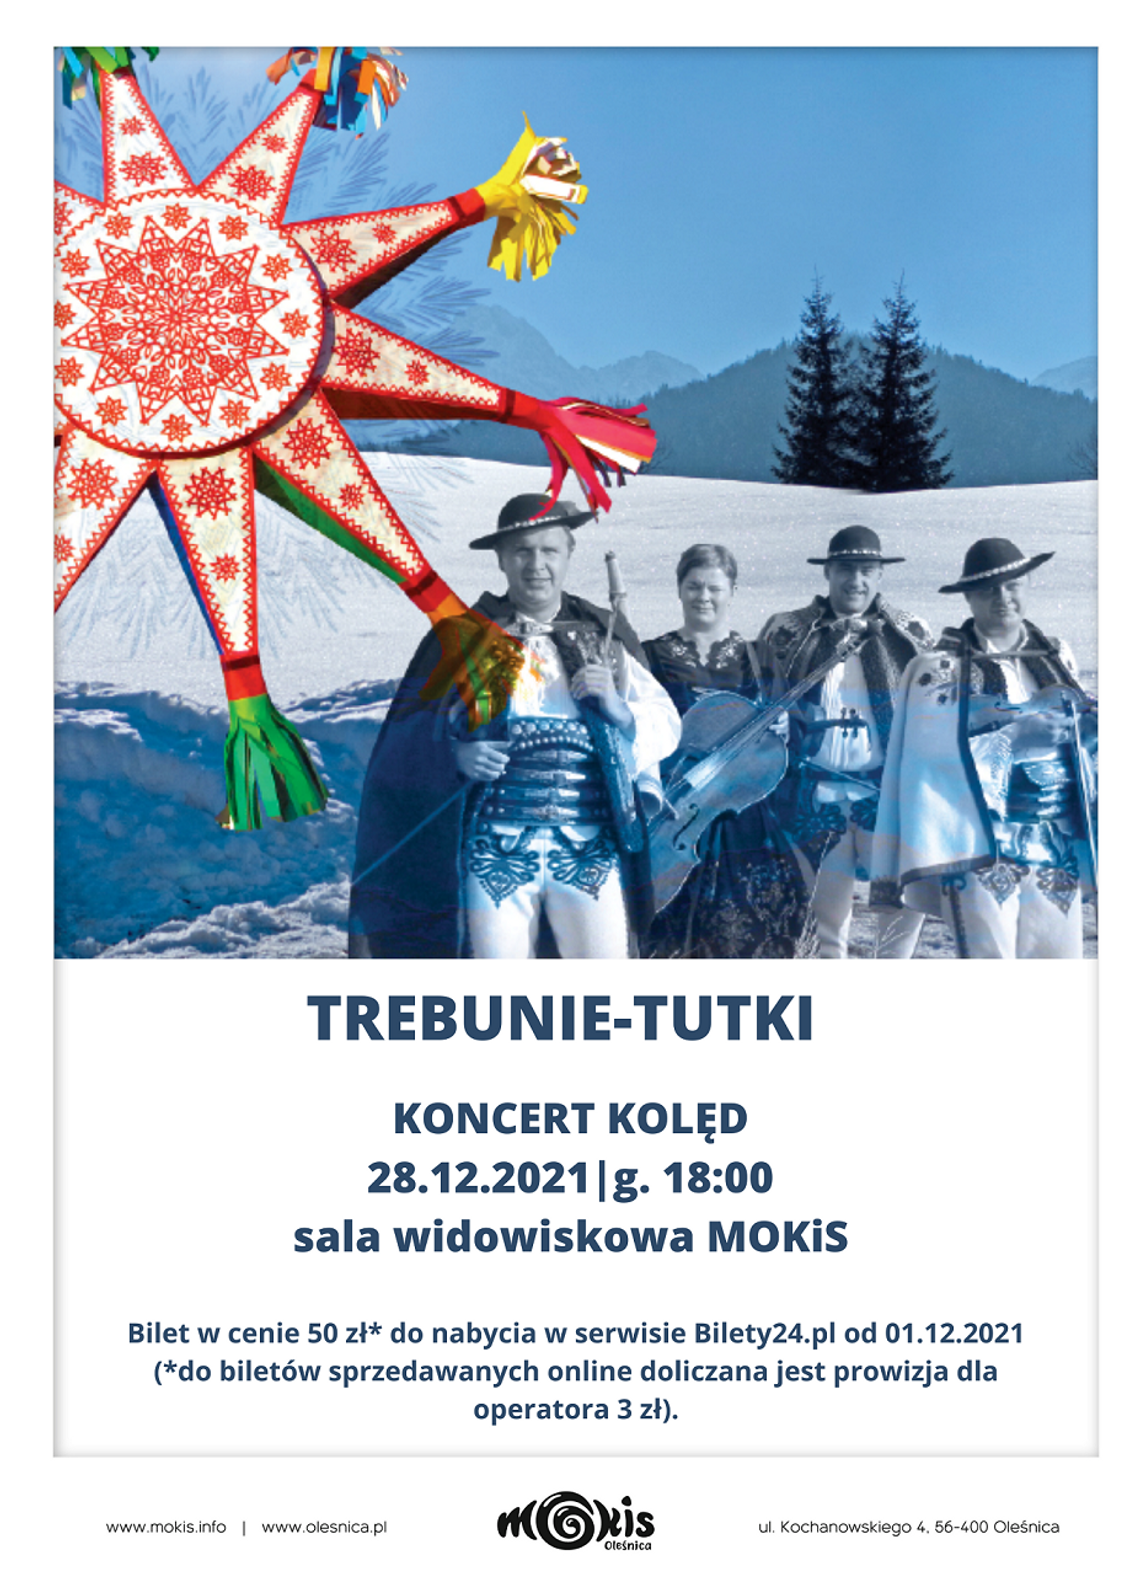 Koncert kolęd w wykonaniu zespołu Trebunie Tutki w Oleśnicy